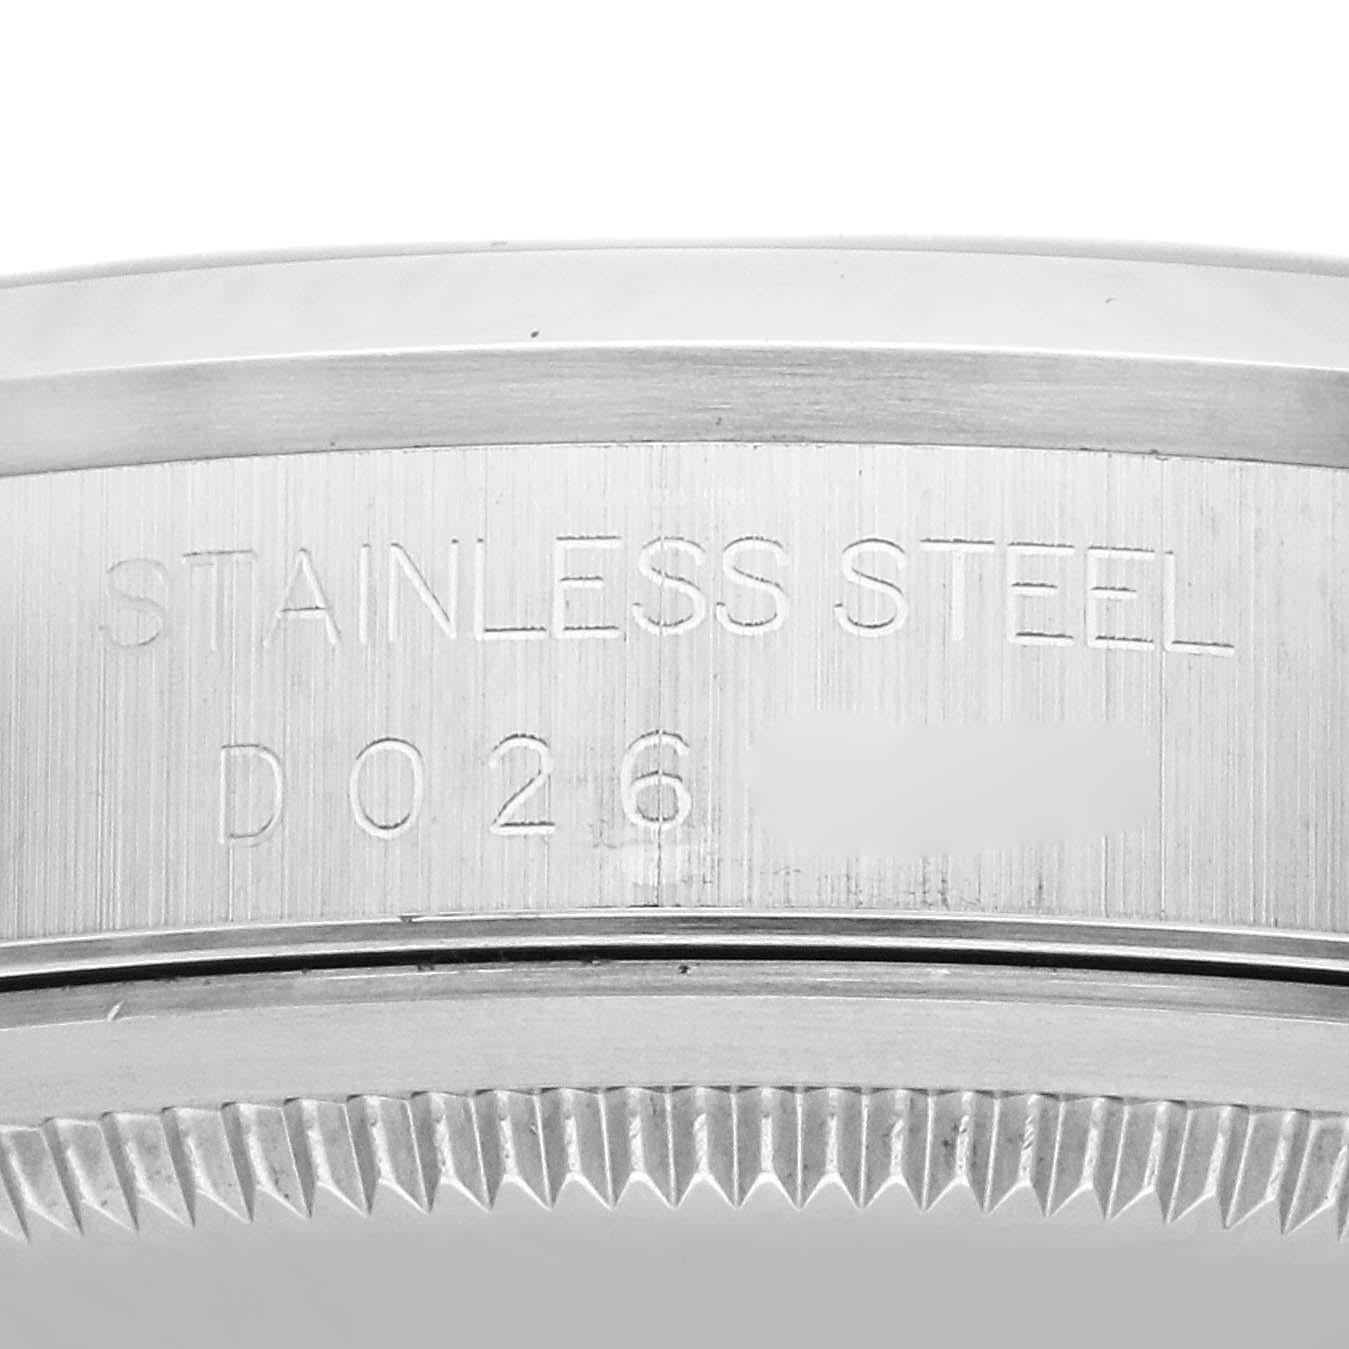 Rolex Datejust 36mm Silver Dial Smooth Bezel Steel Mens Watch 16200 Box Papers. Mouvement automatique à remontage automatique, officiellement certifié chronomètre, avec fonction de date rapide. Boîtier oyster en acier inoxydable de 36 mm de